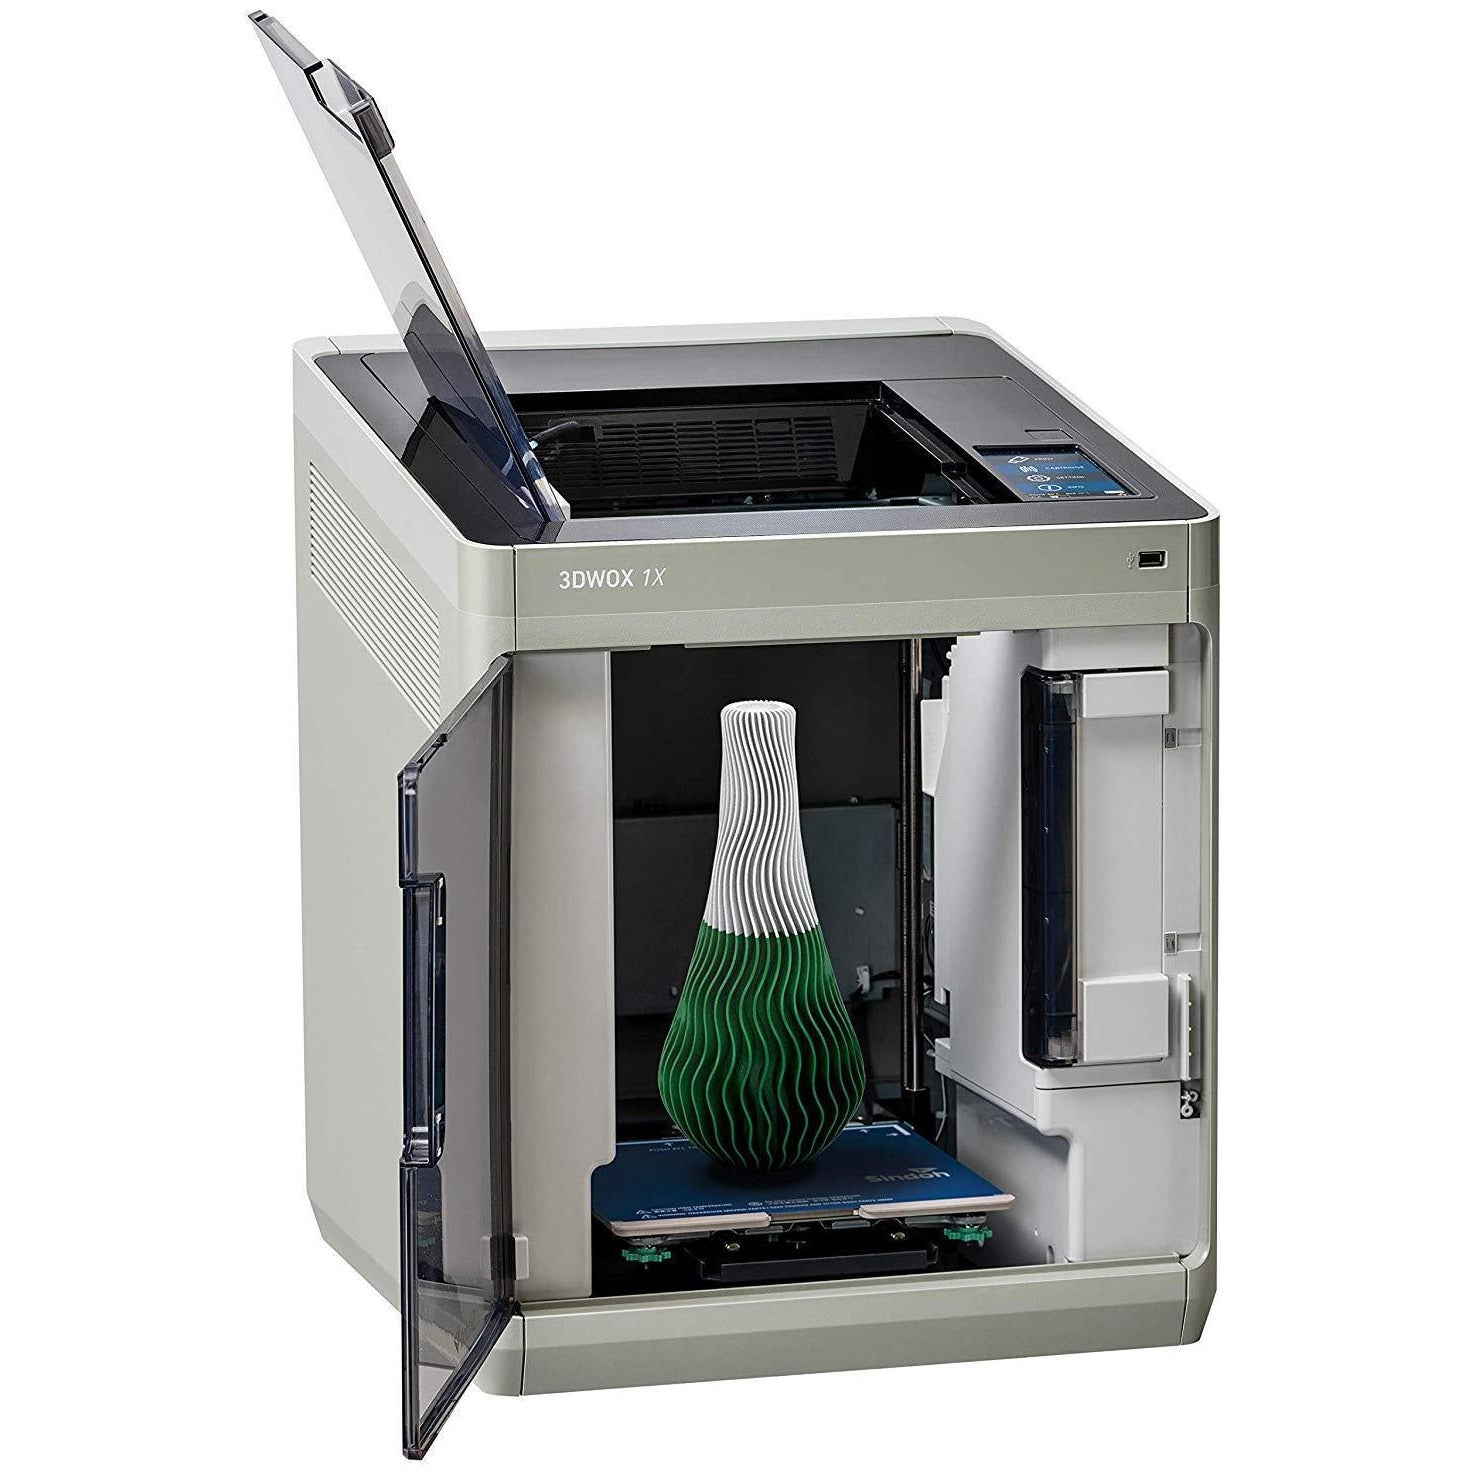 ekstra grill Gentleman Sindoh 3DWOX 1X 3D Printer – 3D Makers Point